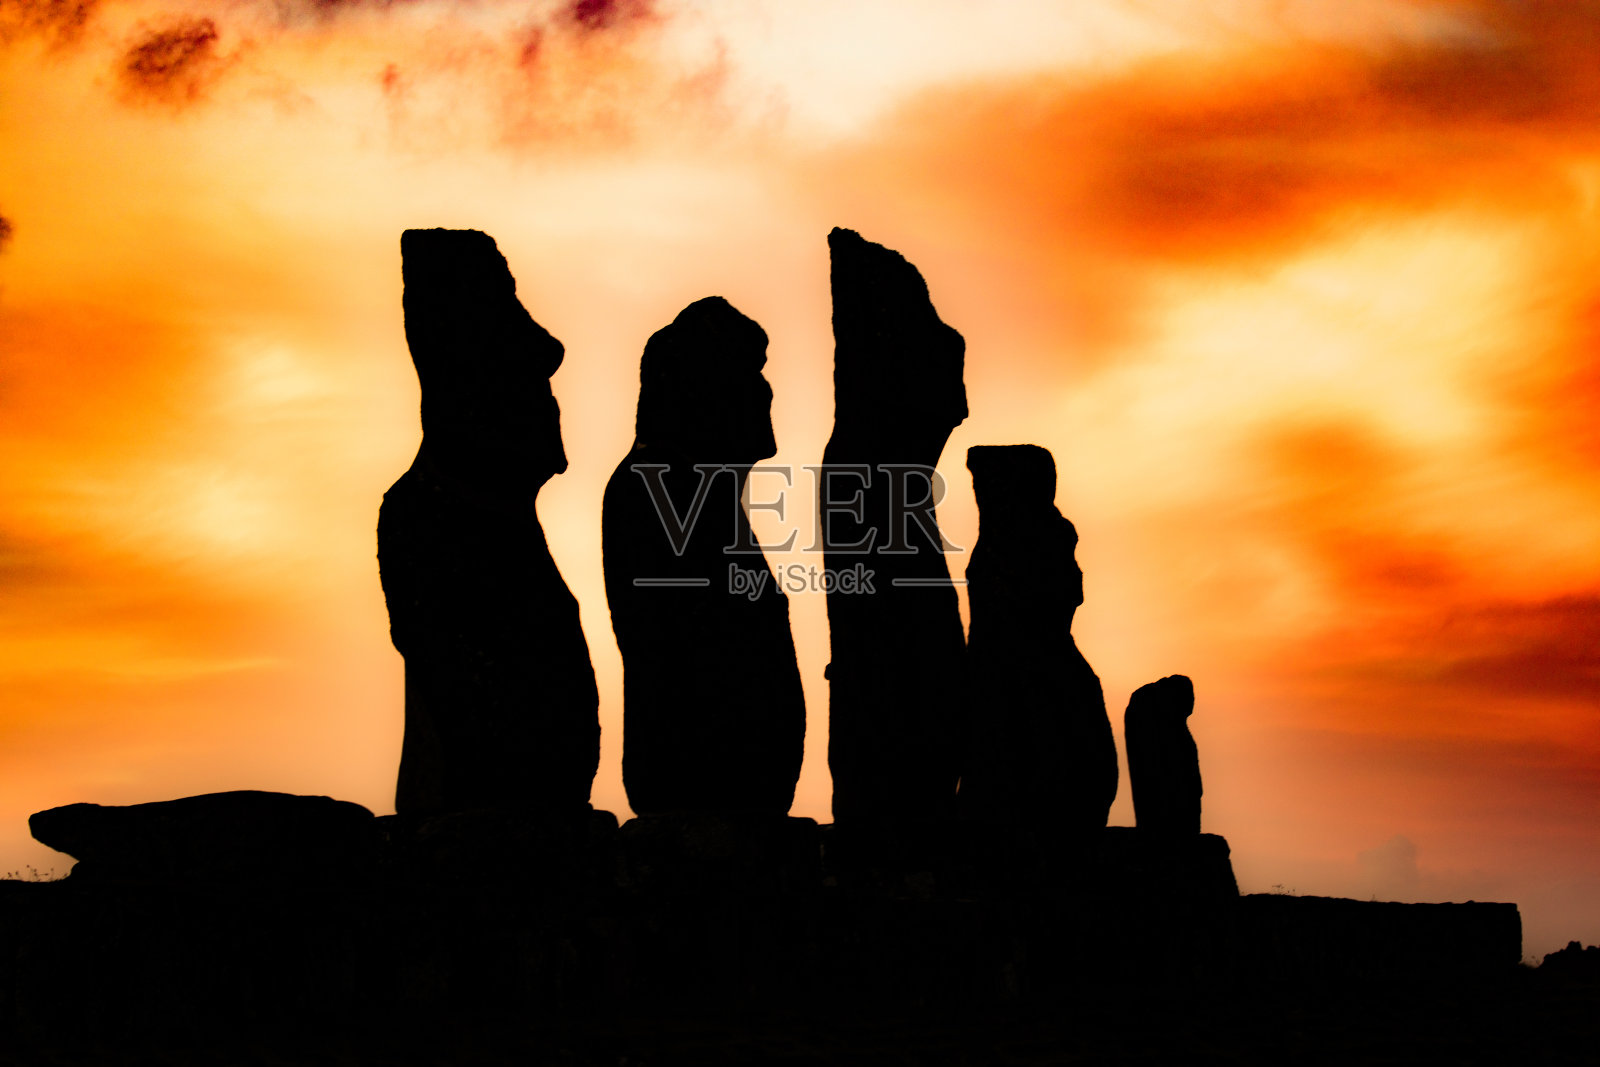 复活节岛的摩埃石像照片摄影图片